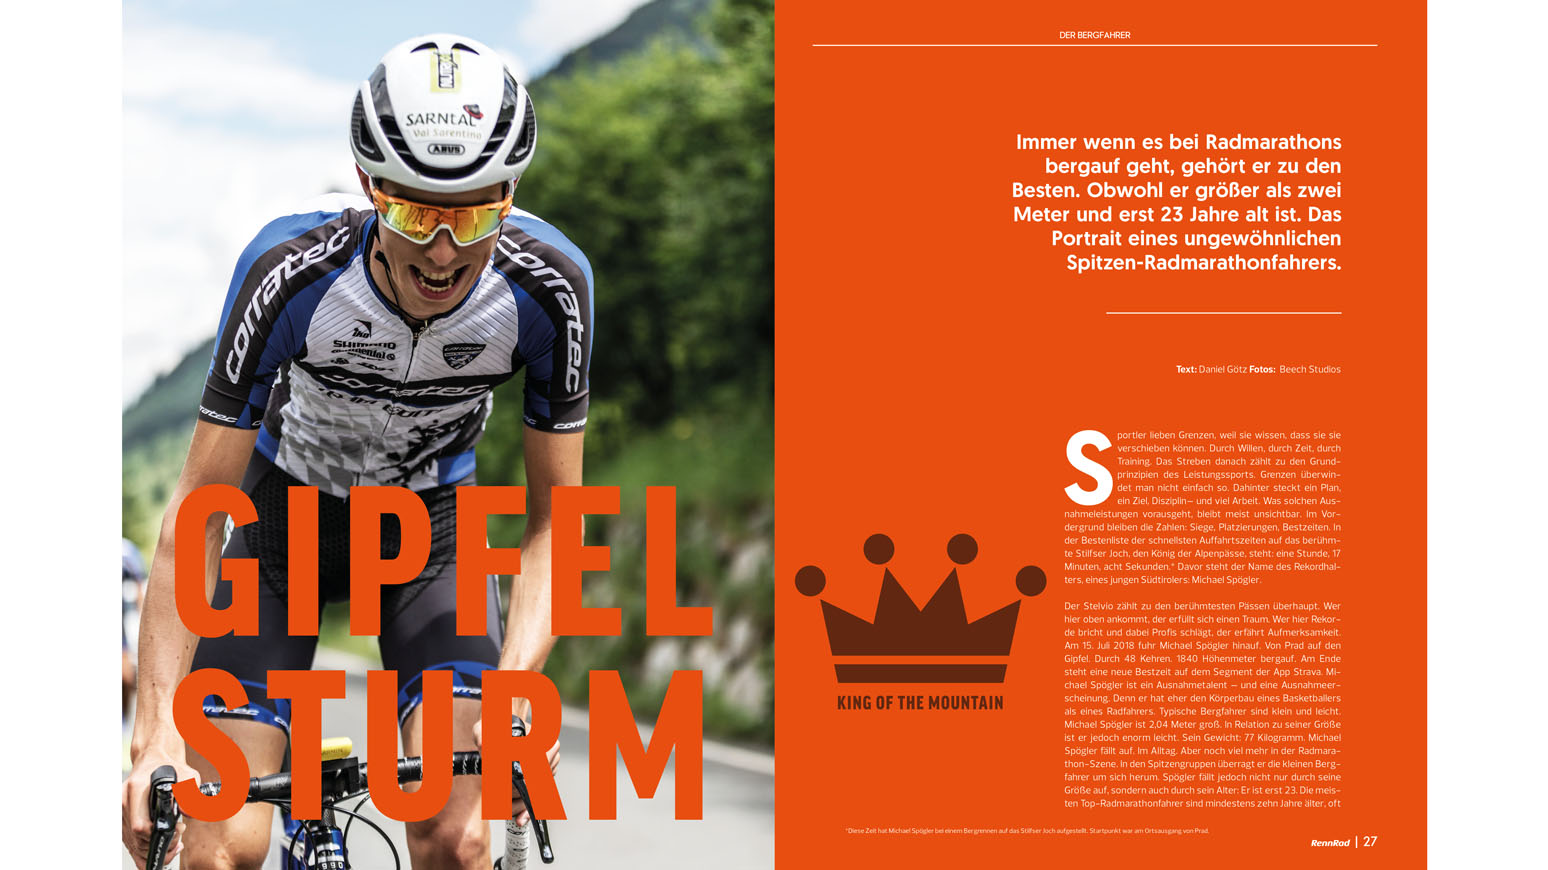 Michael Spögler: Ein junger, extrem erfolgreicher Radmarathon-Spezialist. Einblicke in sein Leben und in sein Training